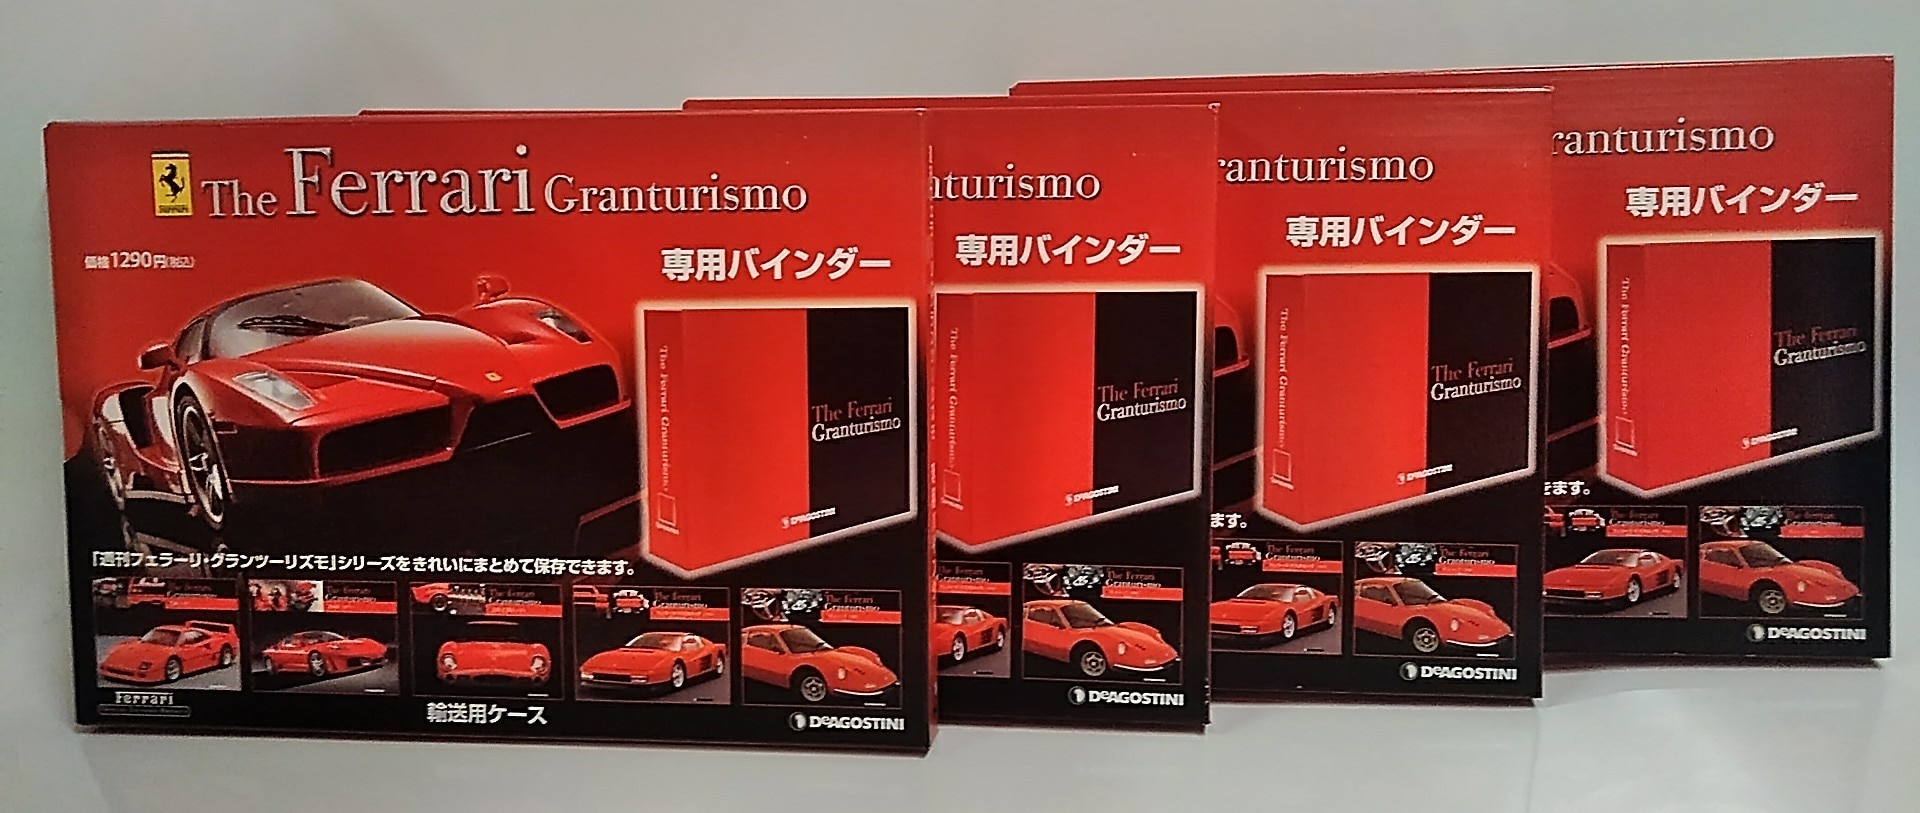 De Agostini all 65 volumes make the weekly Ferrari Gran Turismo